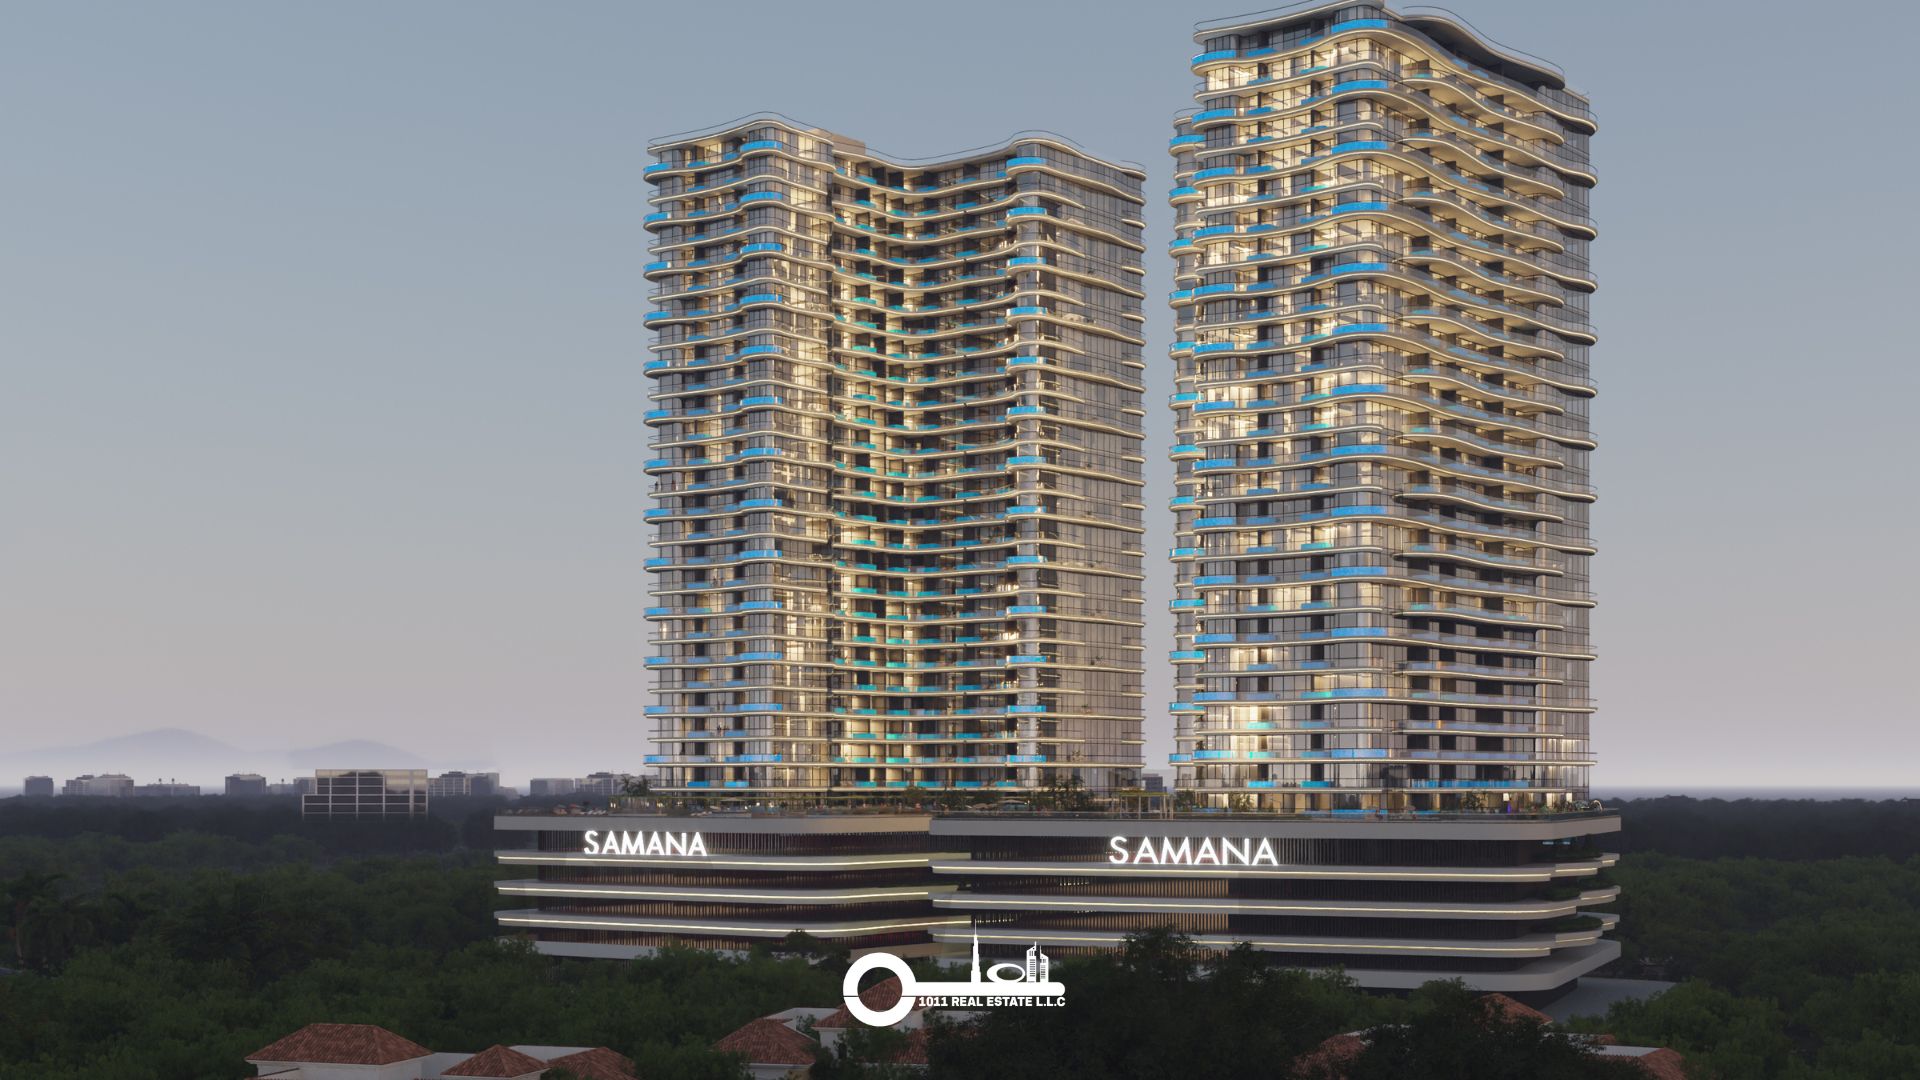 Samana Barari Views 2 1011 Real Estate 